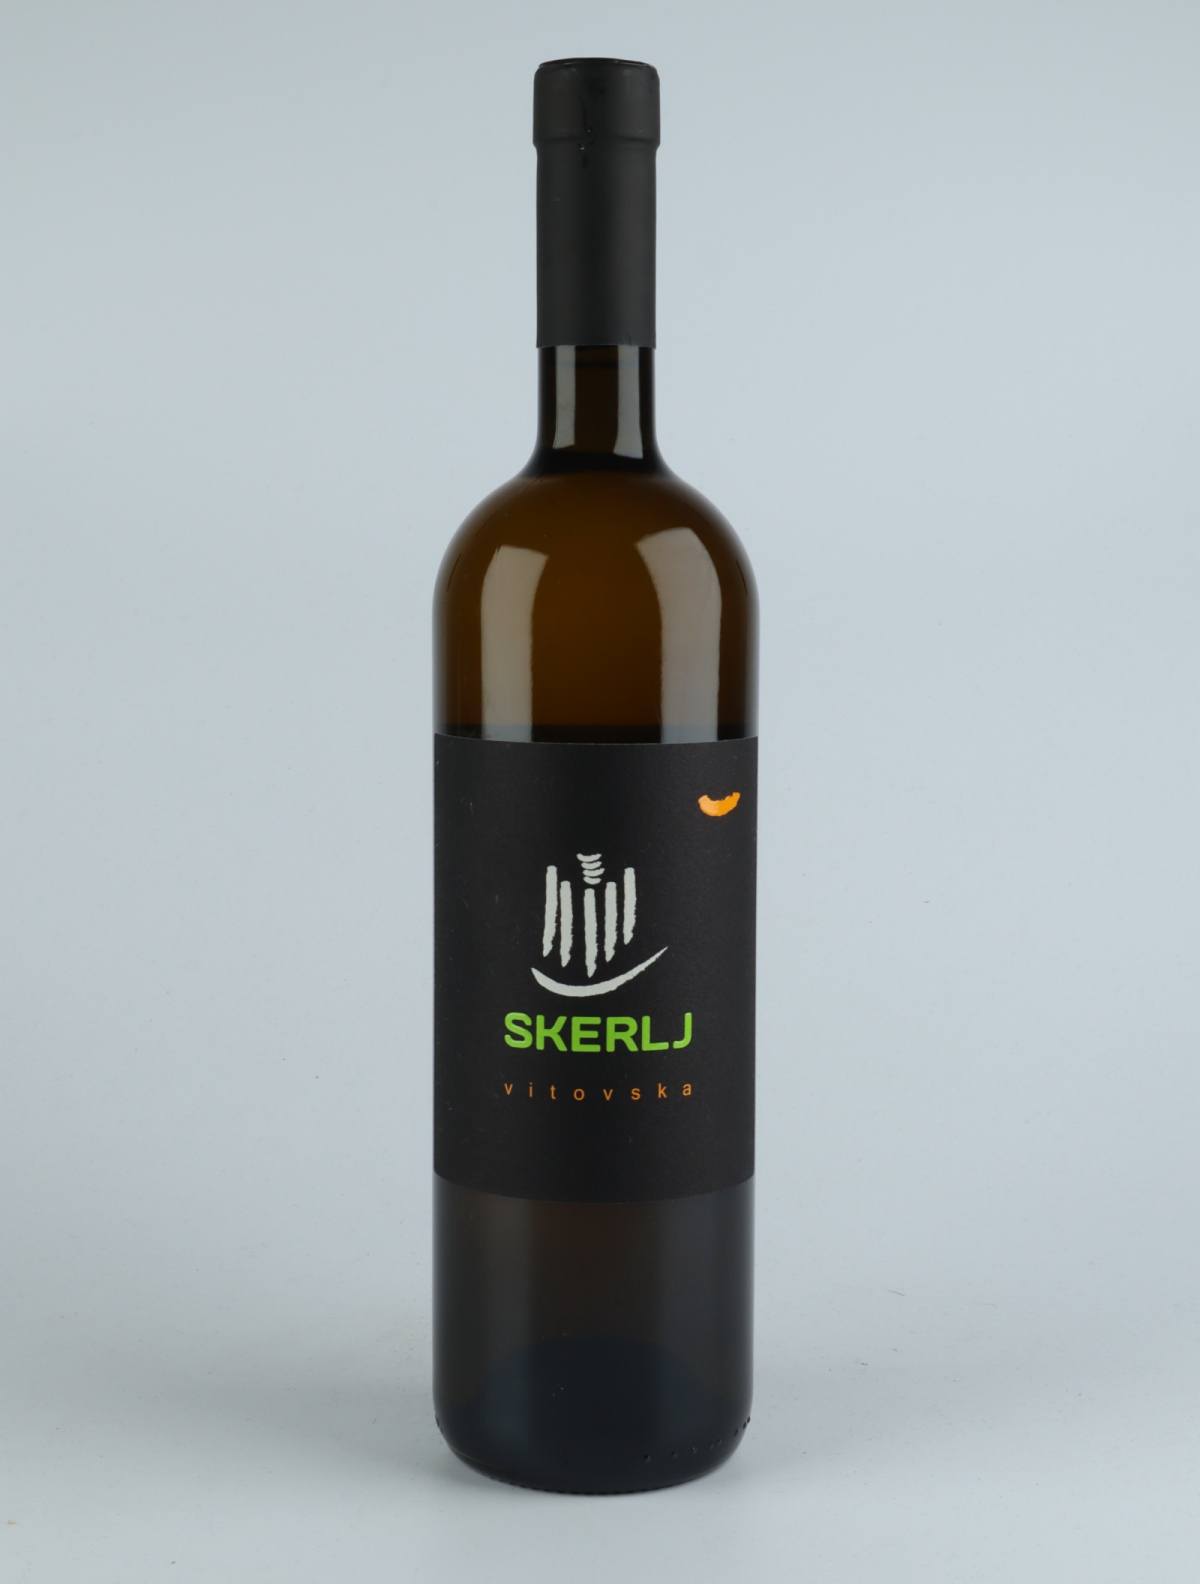 A bottle 2018 Vitovska Orange wine from Skerlj, Friuli in Italy